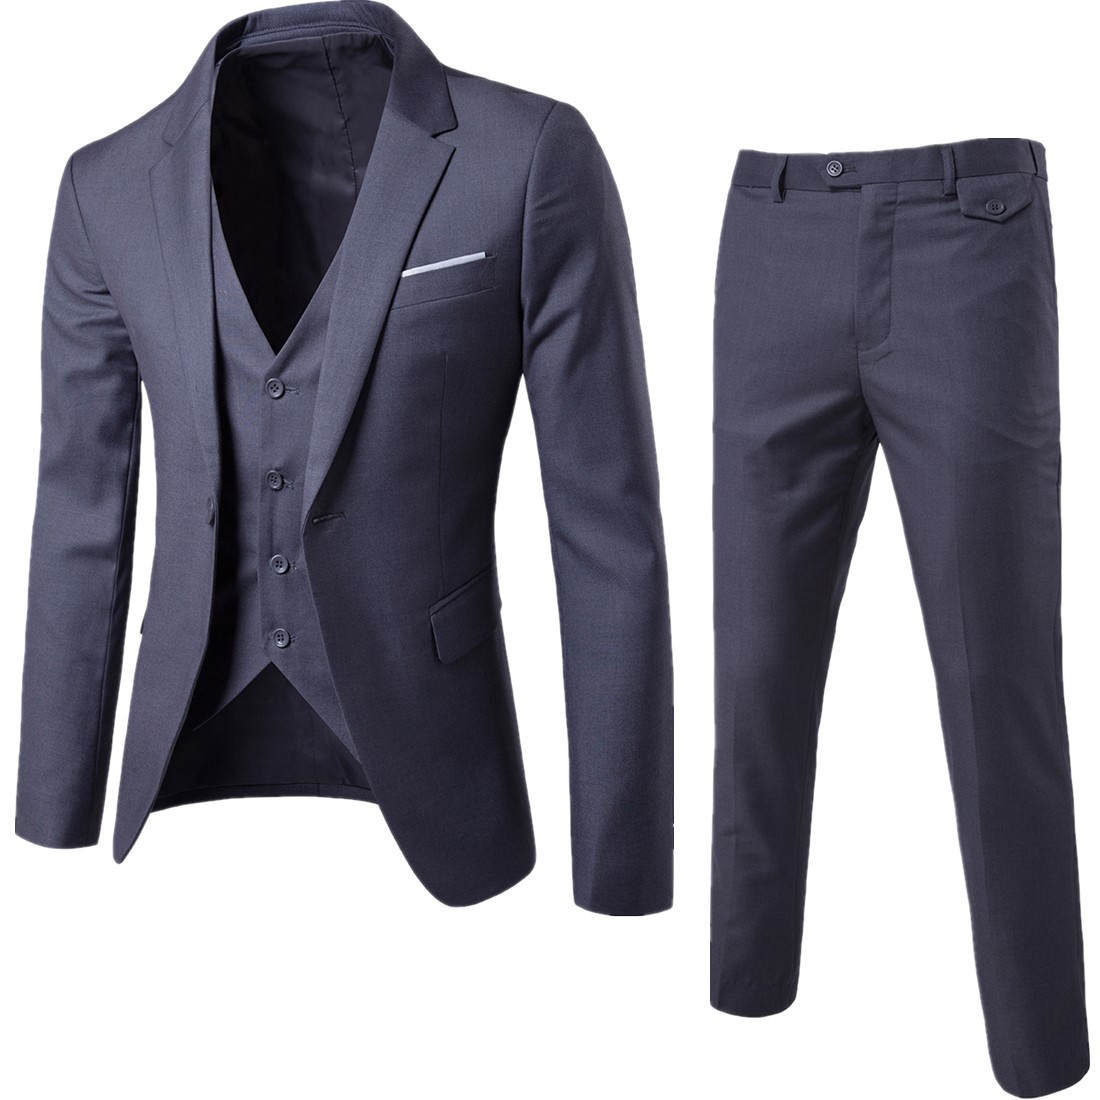 2019 foreign trade new men's two piece suit eBay Korean version men's slim suit factory enough